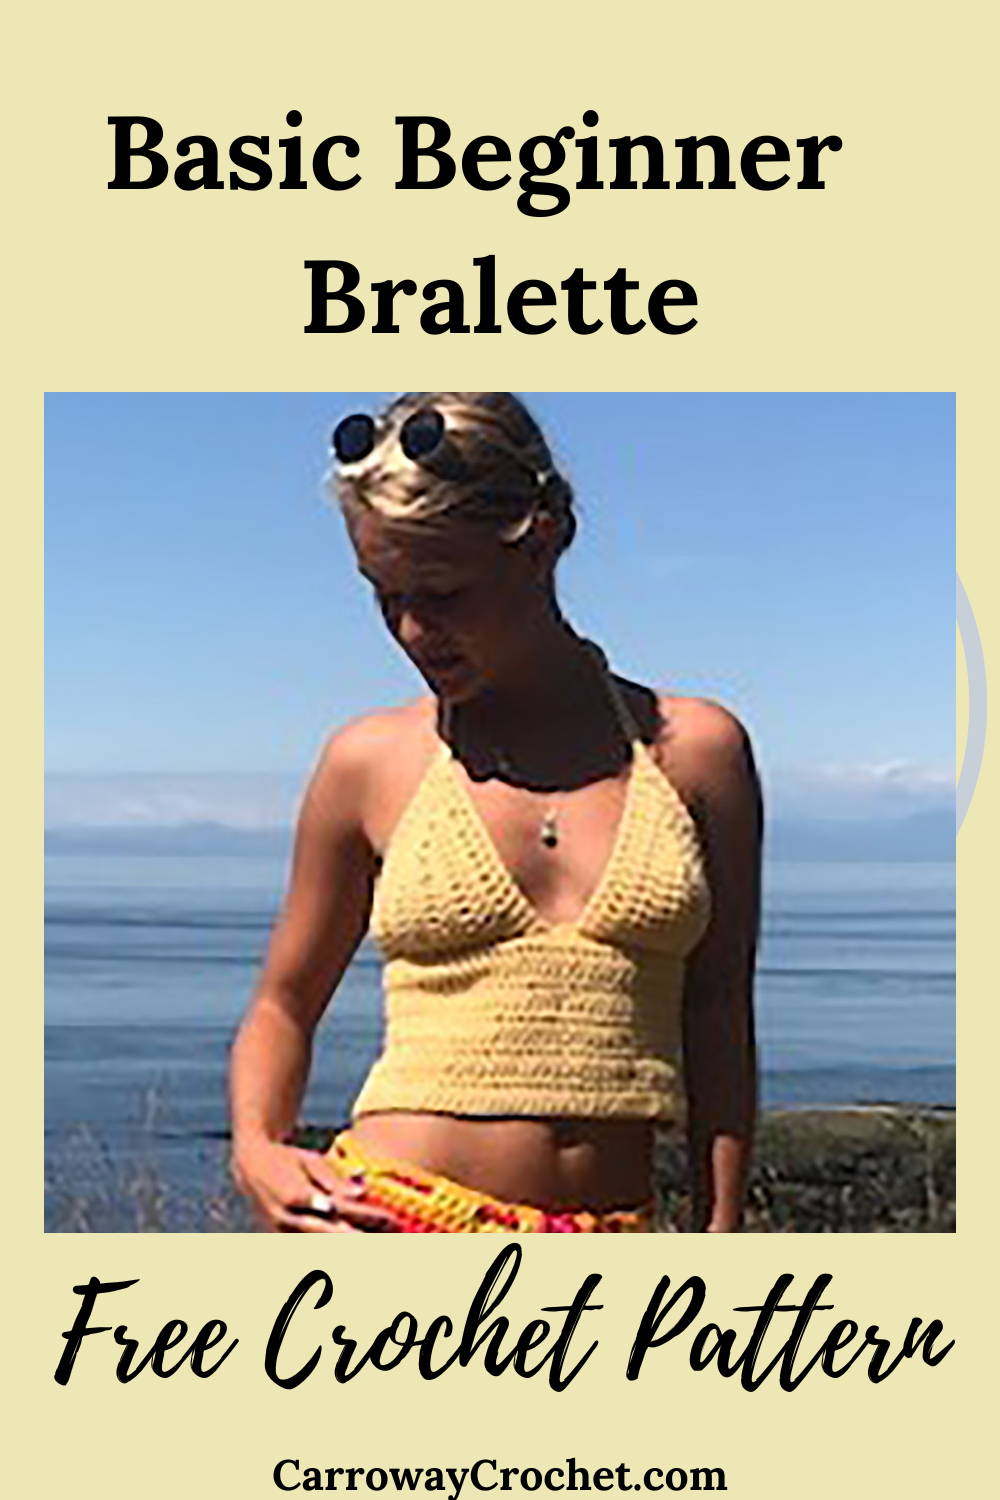 Free Crochet Bralette Pattern The Basic Beginner Bralette